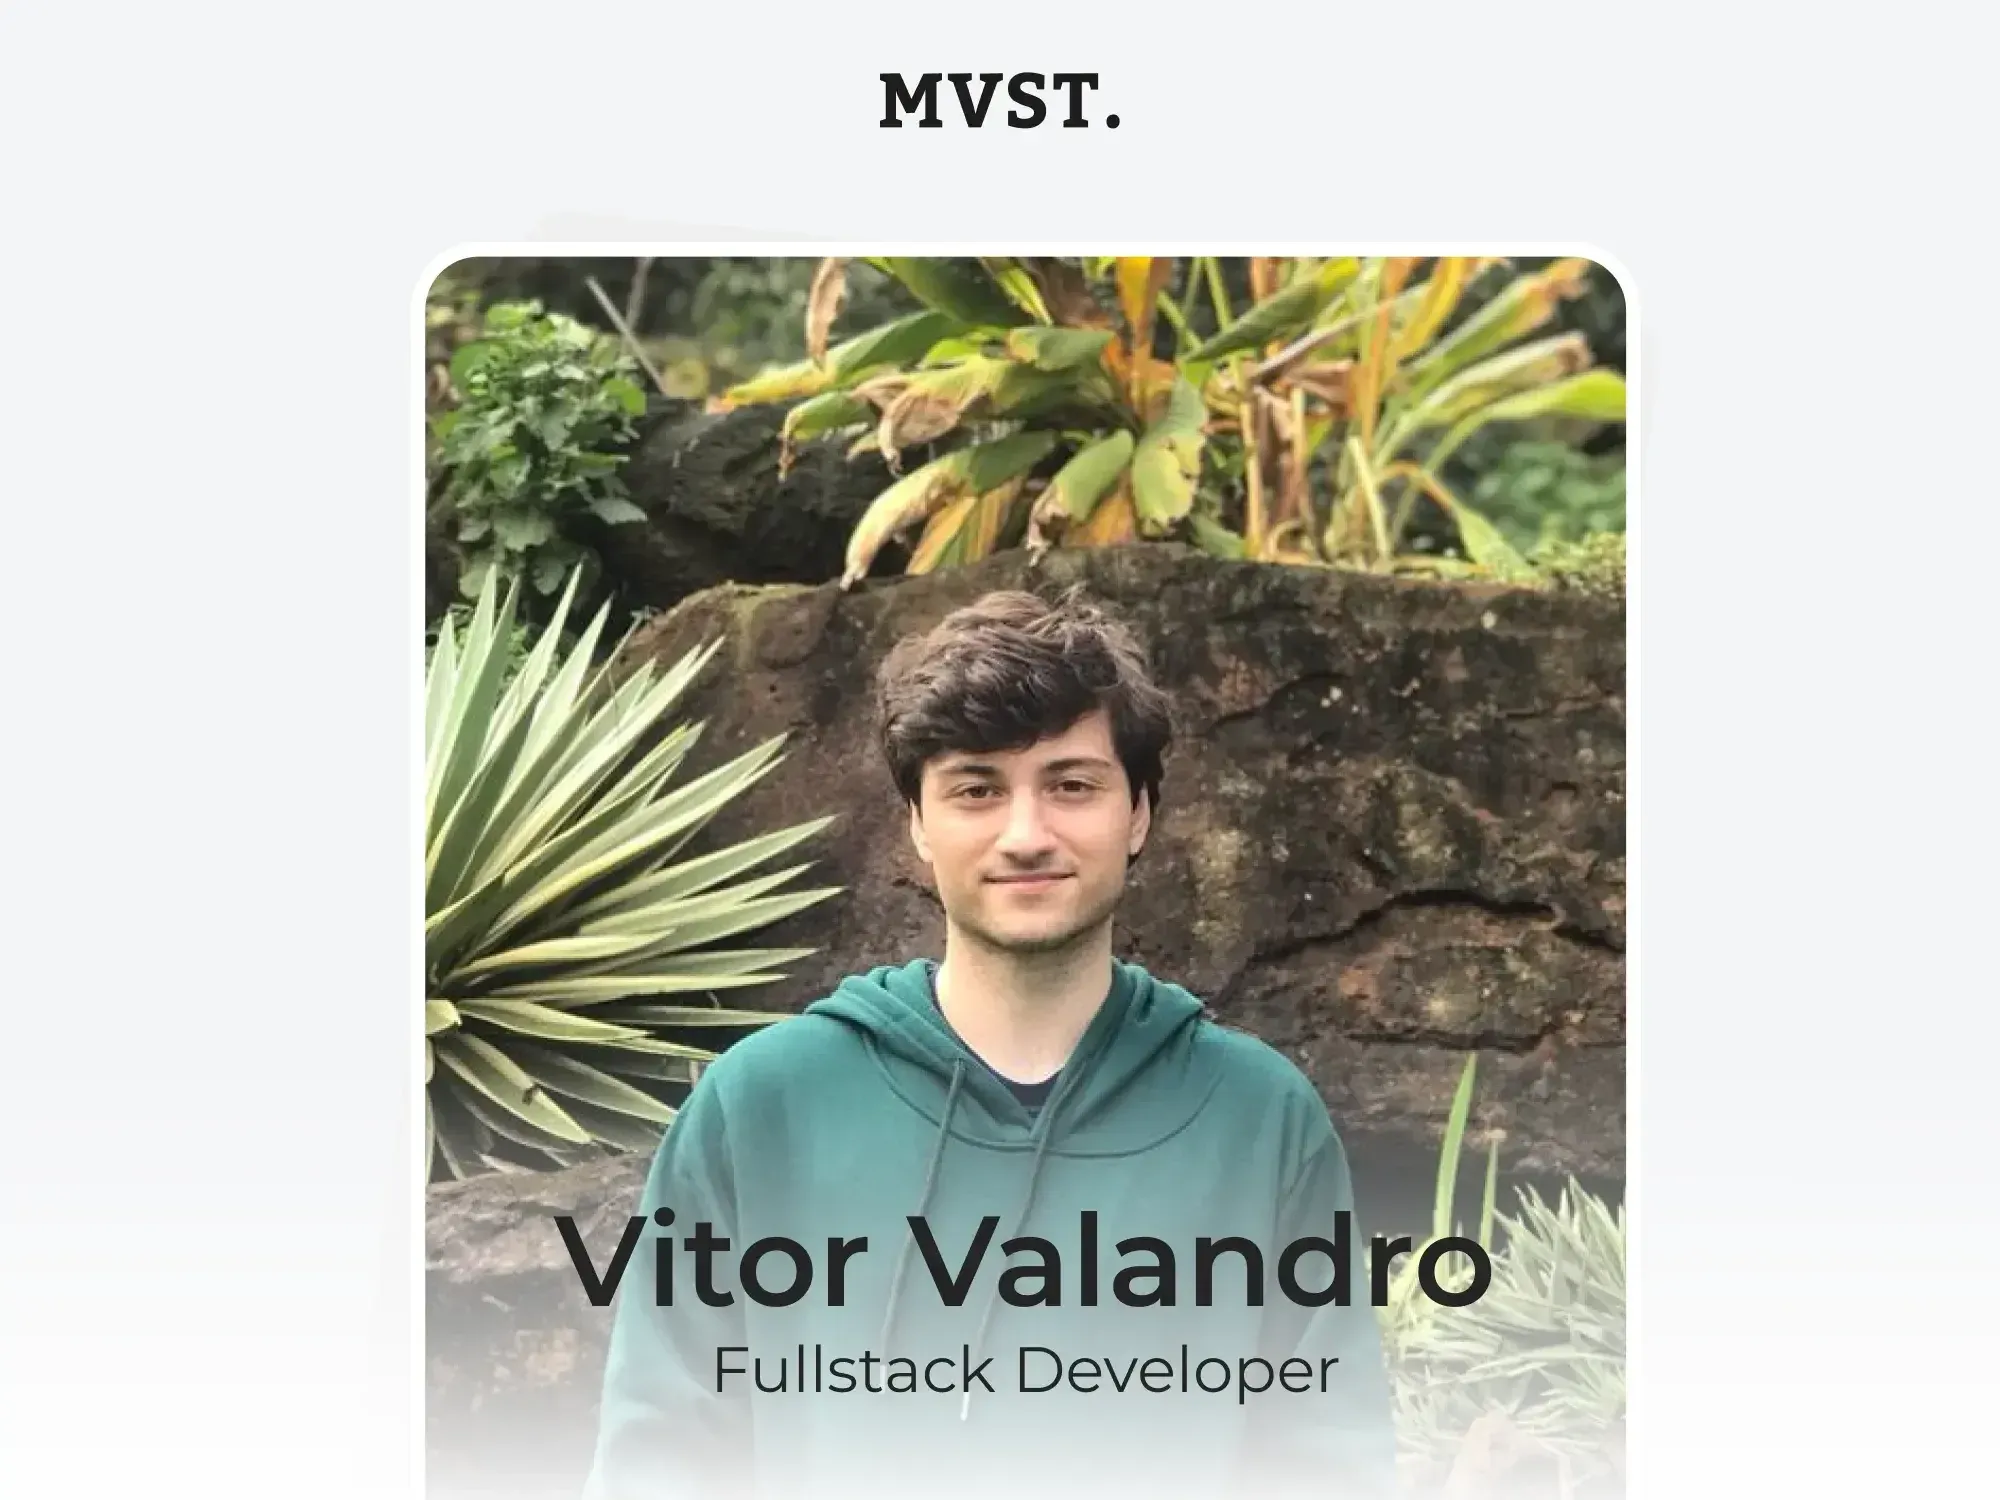 Willkommen bei MVST, Vitor!